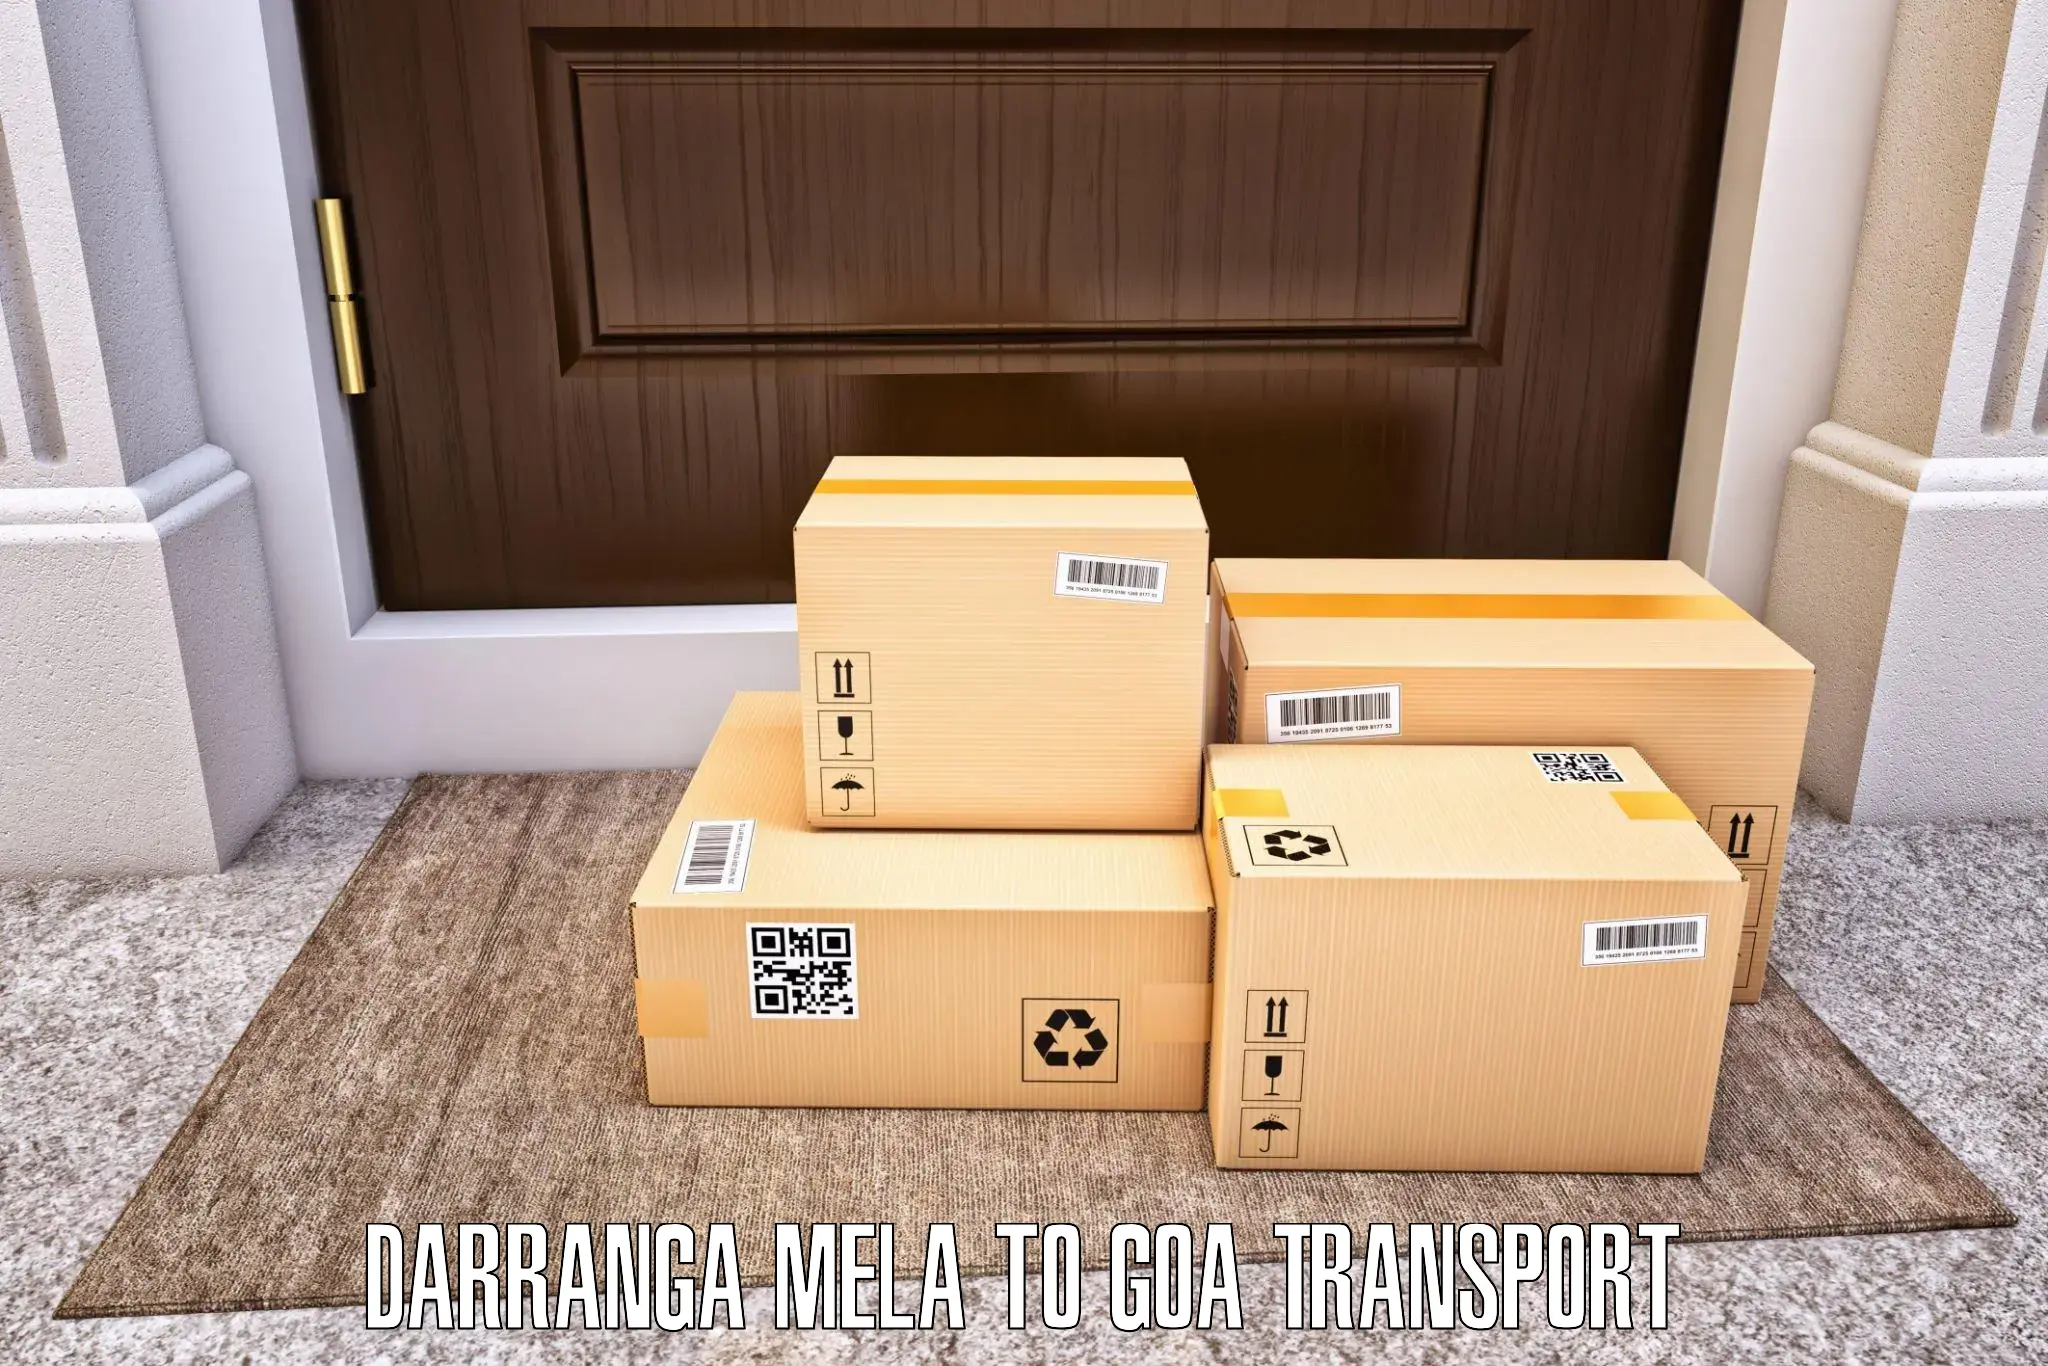 Pick up transport service in Darranga Mela to Vasco da Gama